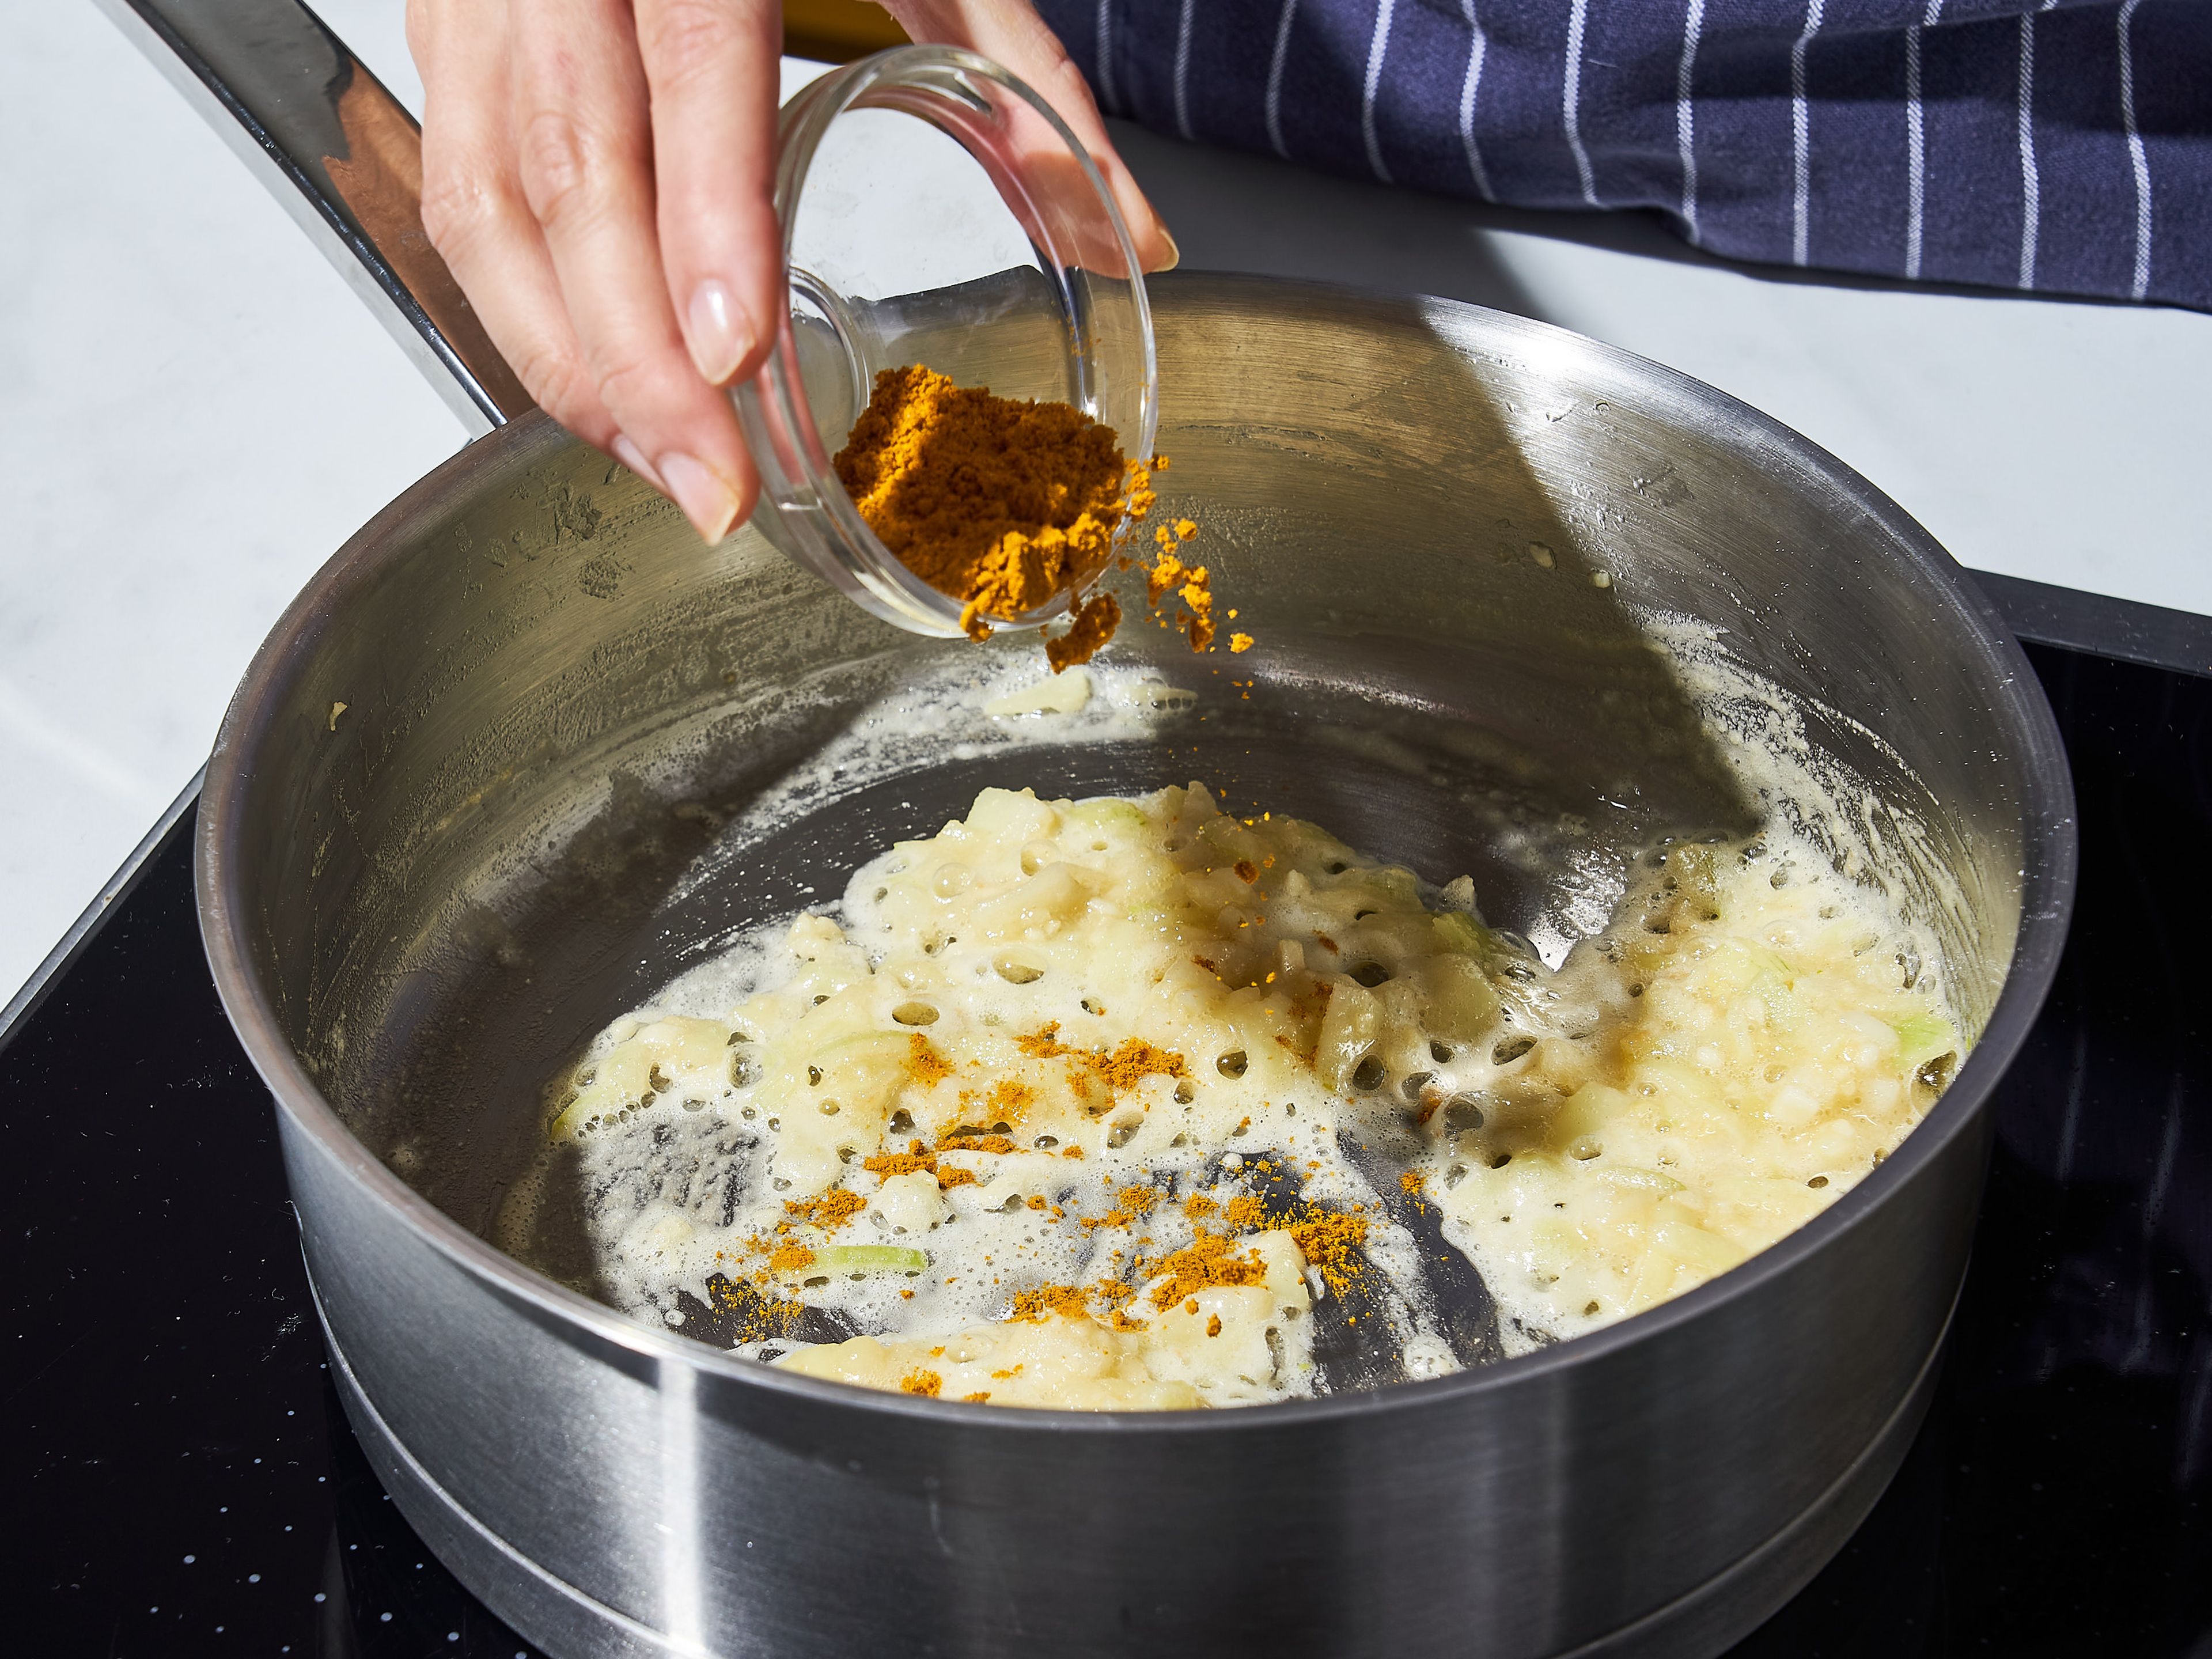 Für die Soße, Pflanzenöl in einen mittelgroßen Topf bei mittlerer Hitze geben. Gehackten Knoblauch und Zwiebeln hinzufügen und ca. 5 Min. anbraten. Butter hinzufügen und schmelzen lassen. Dann einen Teil des Mehls hinzugeben und unter ständigem Rühren ca. 4 Min. braten, bis die Mischung anfängt zu bräunen. Currypulver und bei Bedarf einige Chiliflocken einrühren und unter ständigem Rühren ca. 3 Min. weiterbraten.